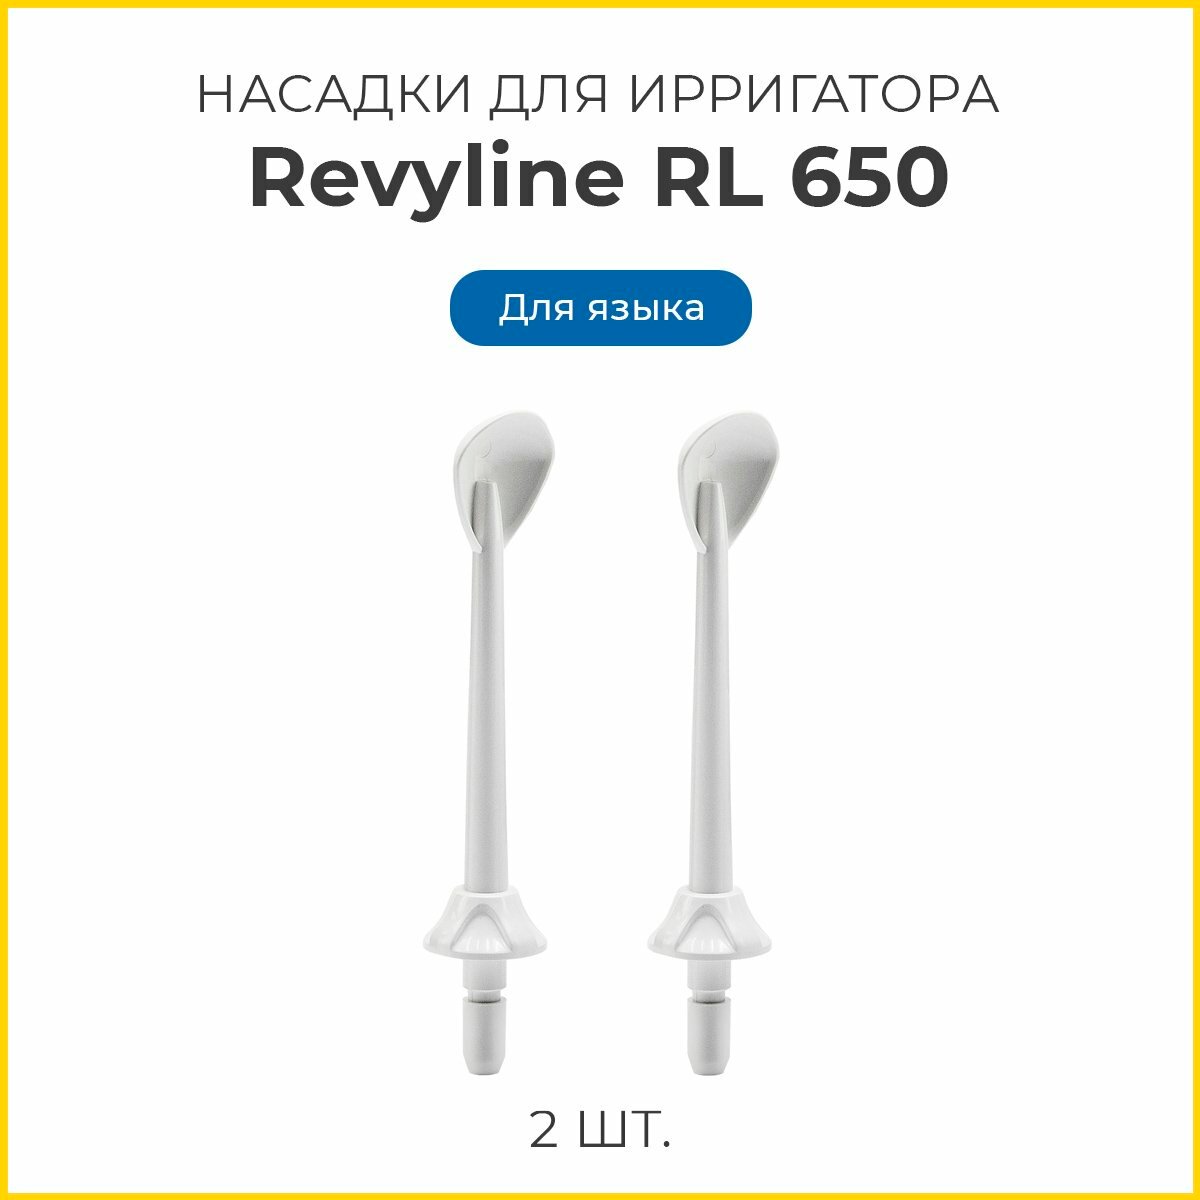 Сменные насадки для ирригатора Revyline RL 650 для языка, белые, 2 шт.